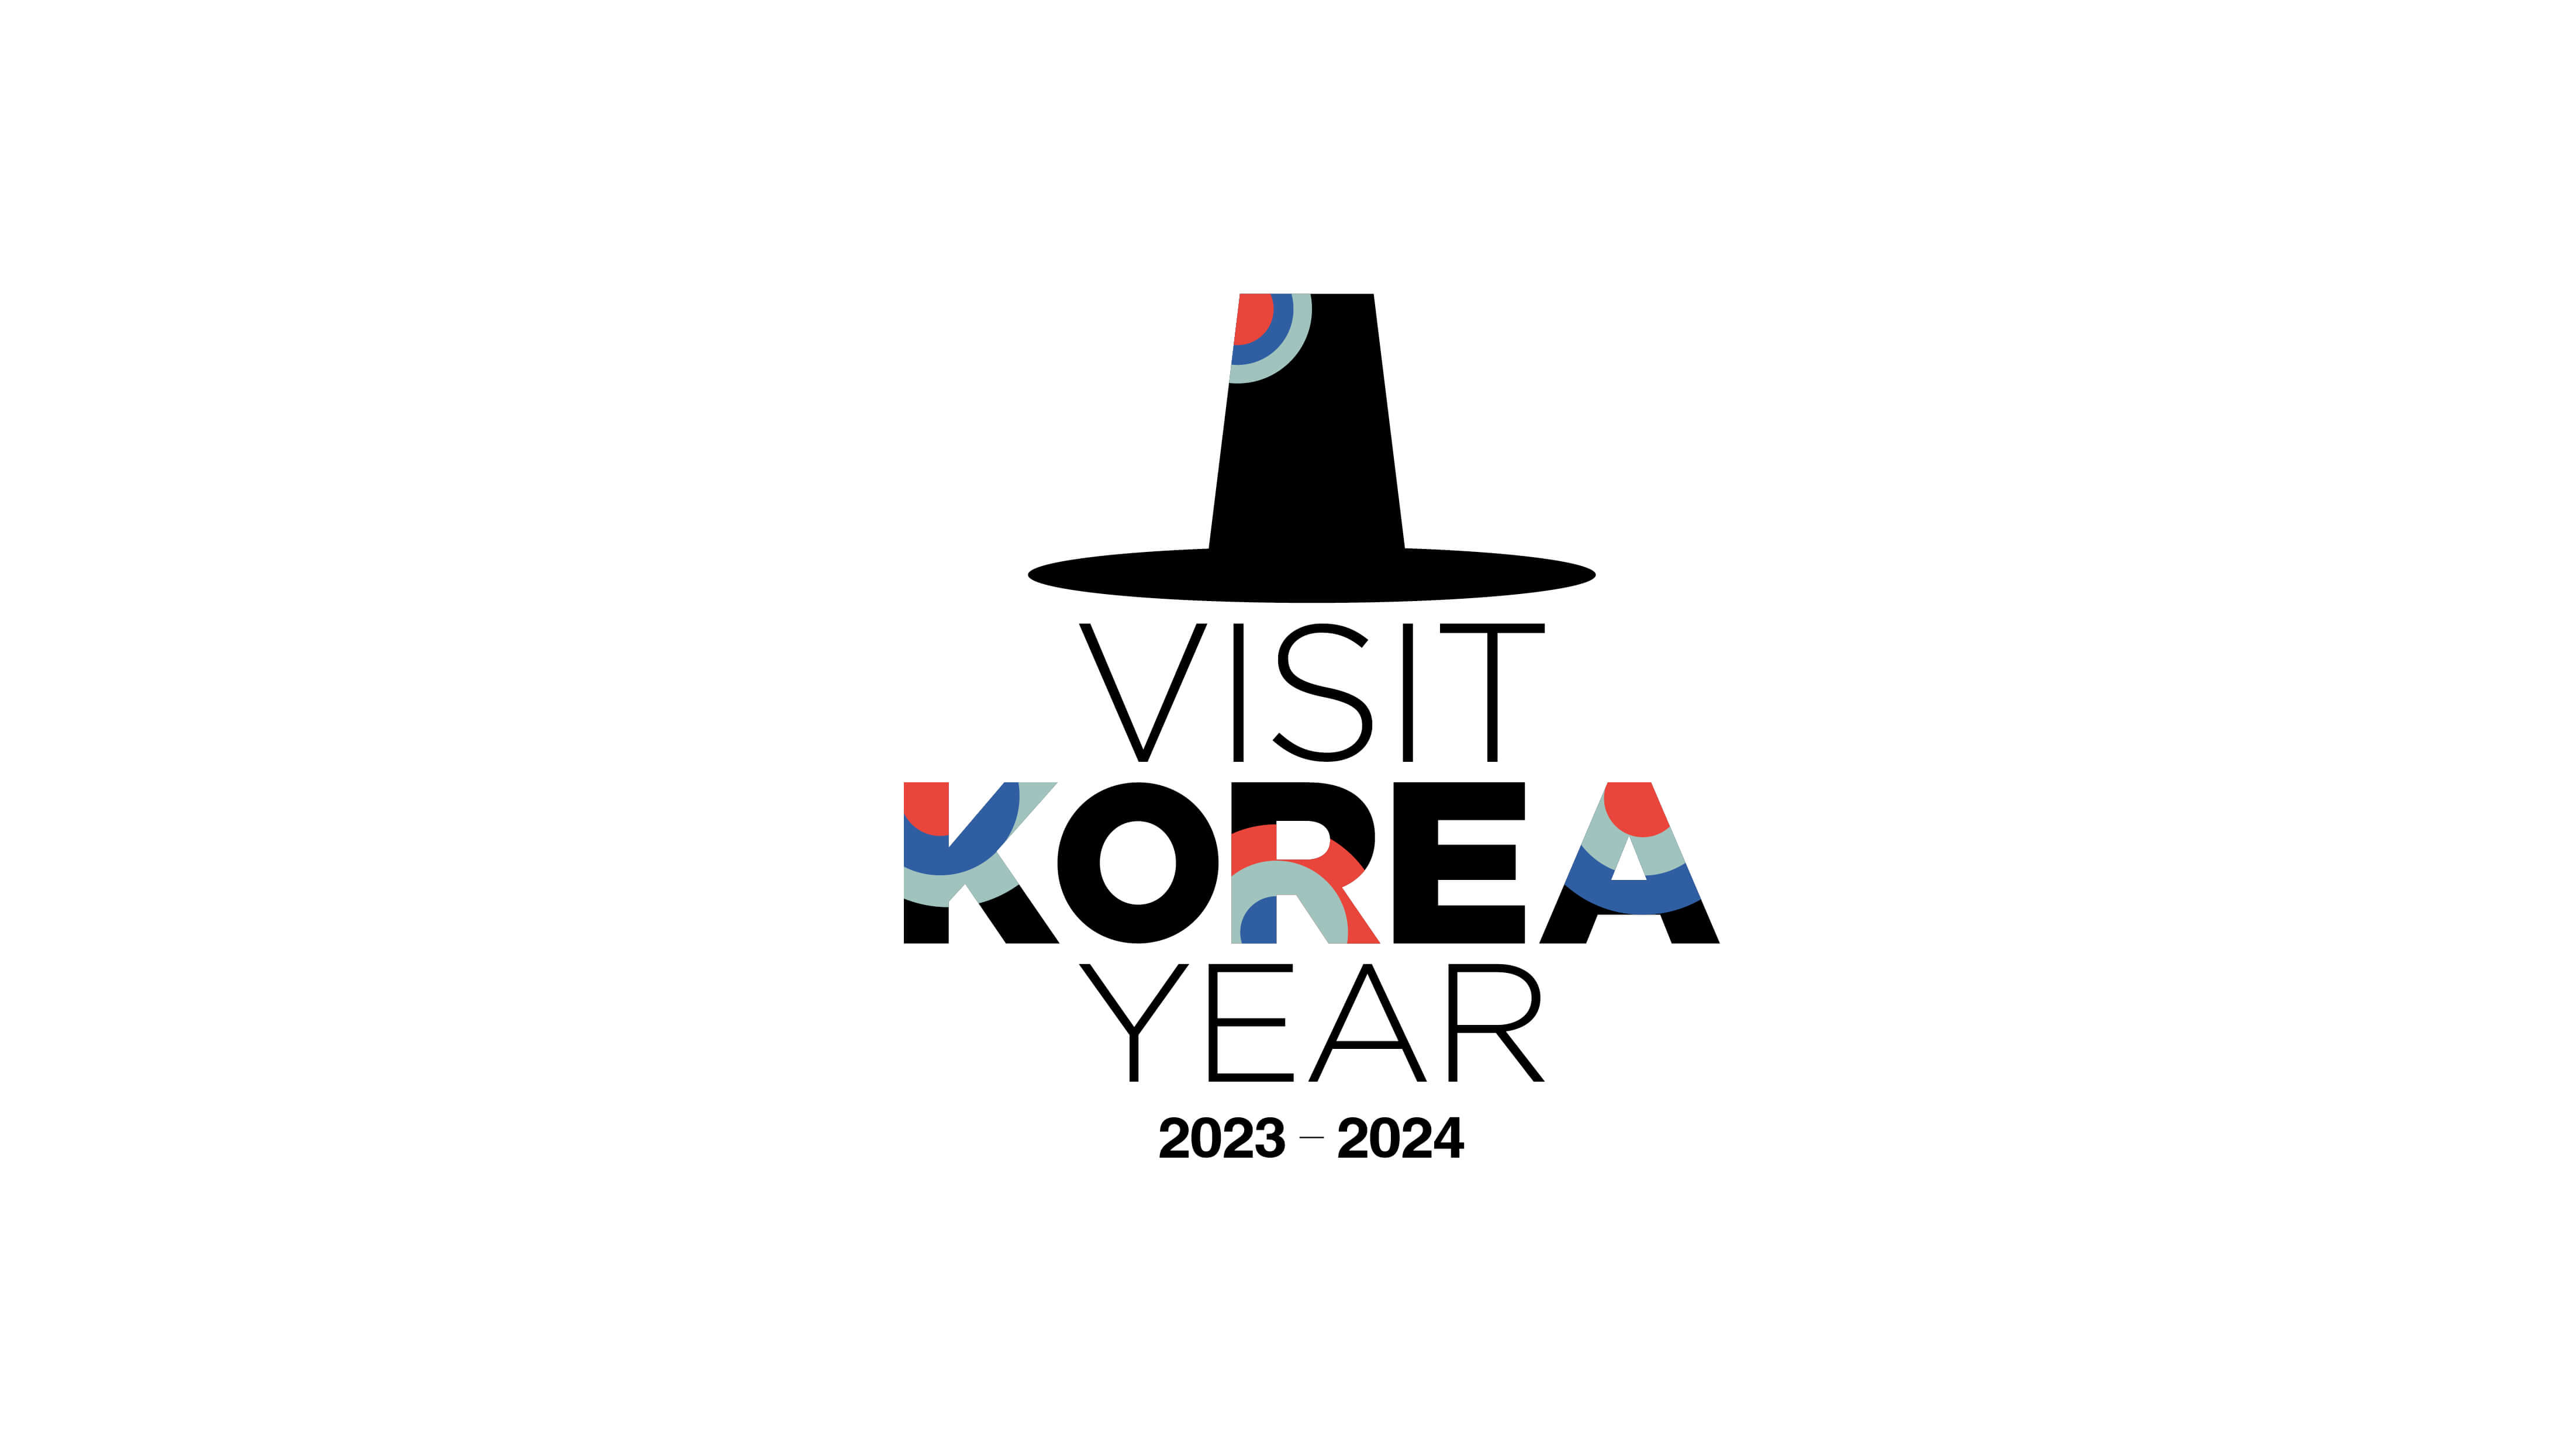 2023 Visit Korea Year 100 K-Culture-Tourism Event